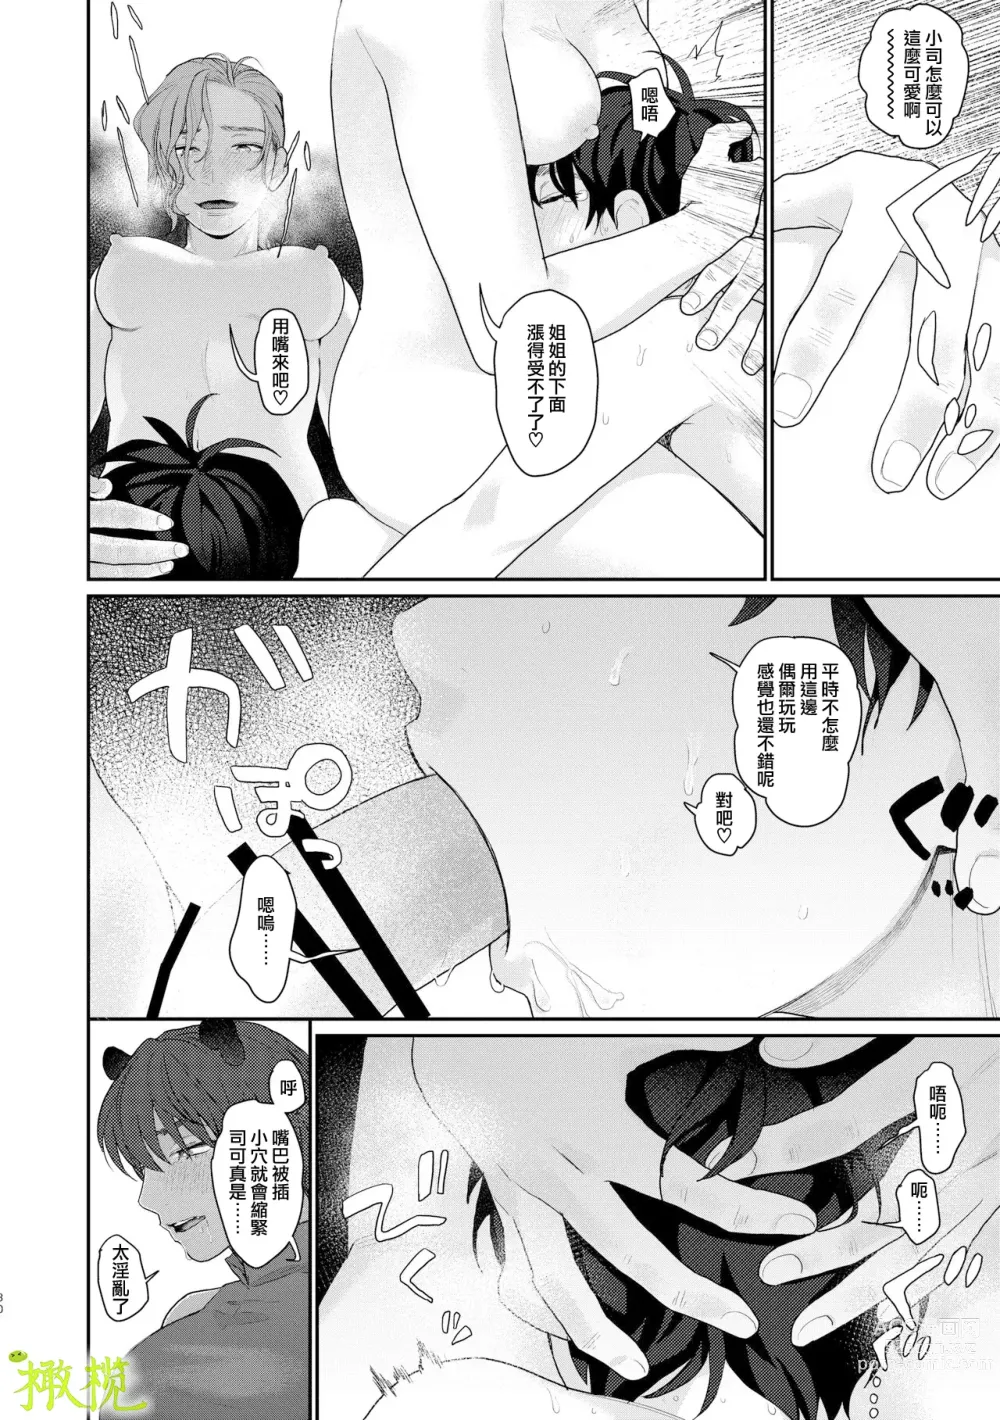 Page 29 of doujinshi 身为男生的我却在穿越到异世界后被同队大姐姐当作雌性疼爱了。2